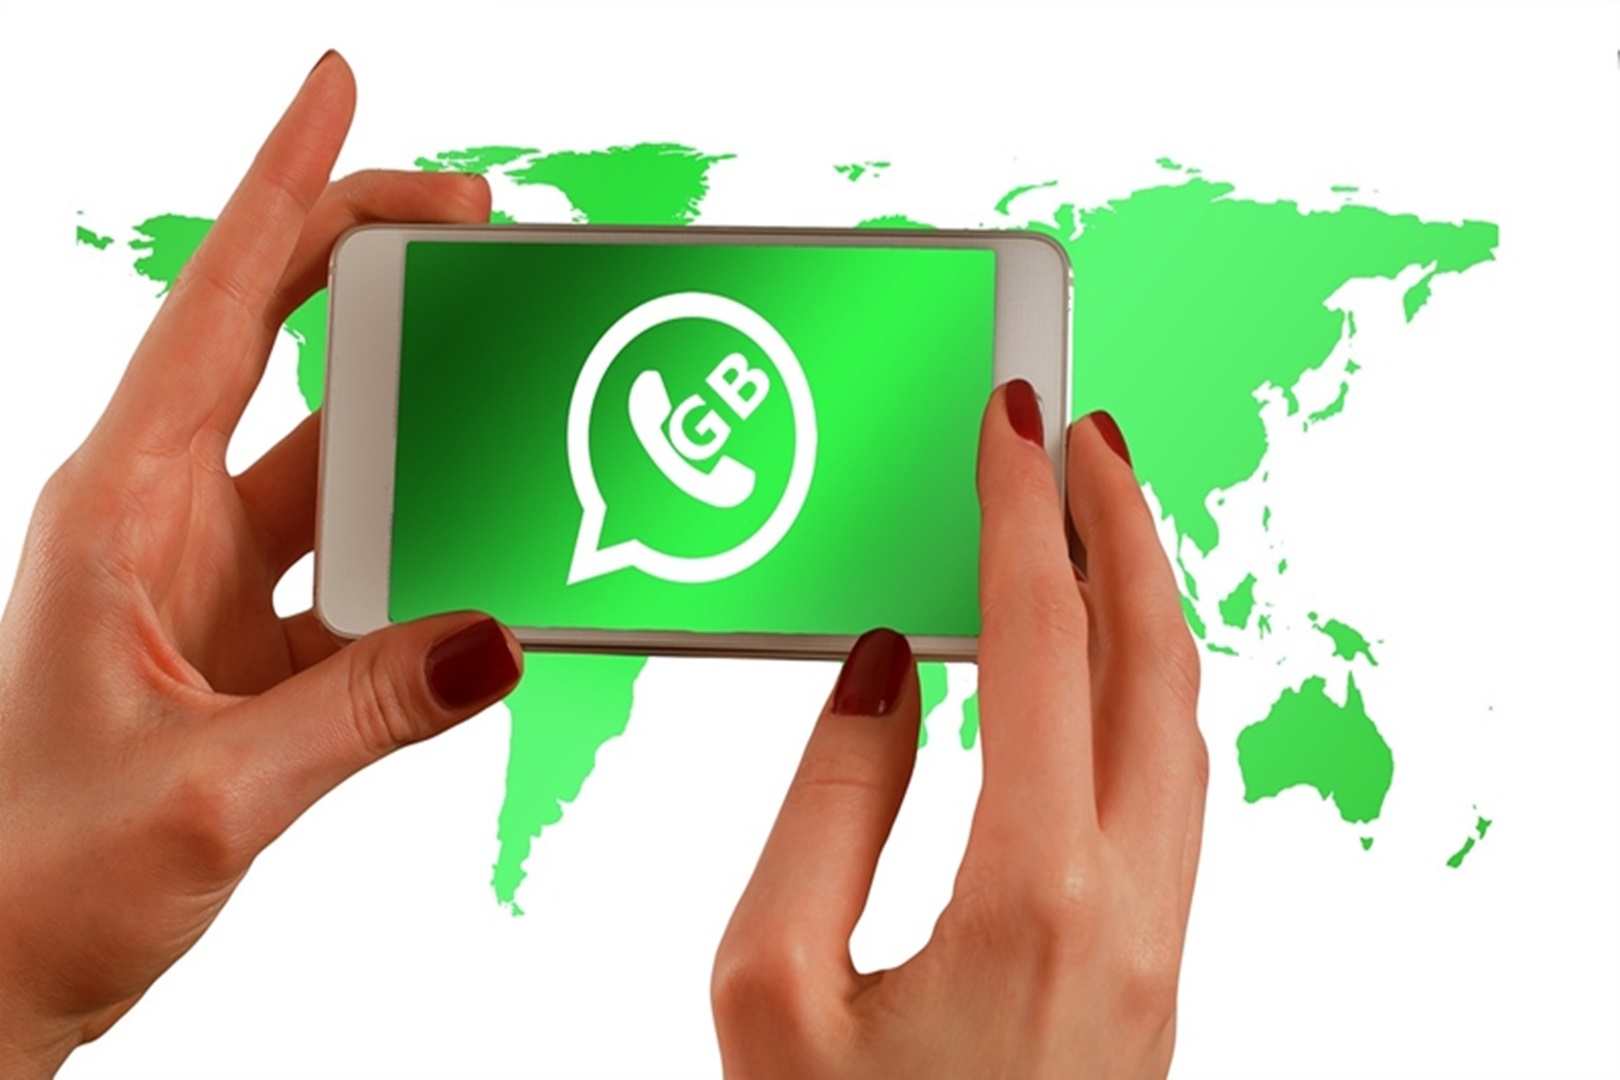 Link GB WhatsApp Apk v17.40, Multi Akun dan Ada Fitur Ubah Suara